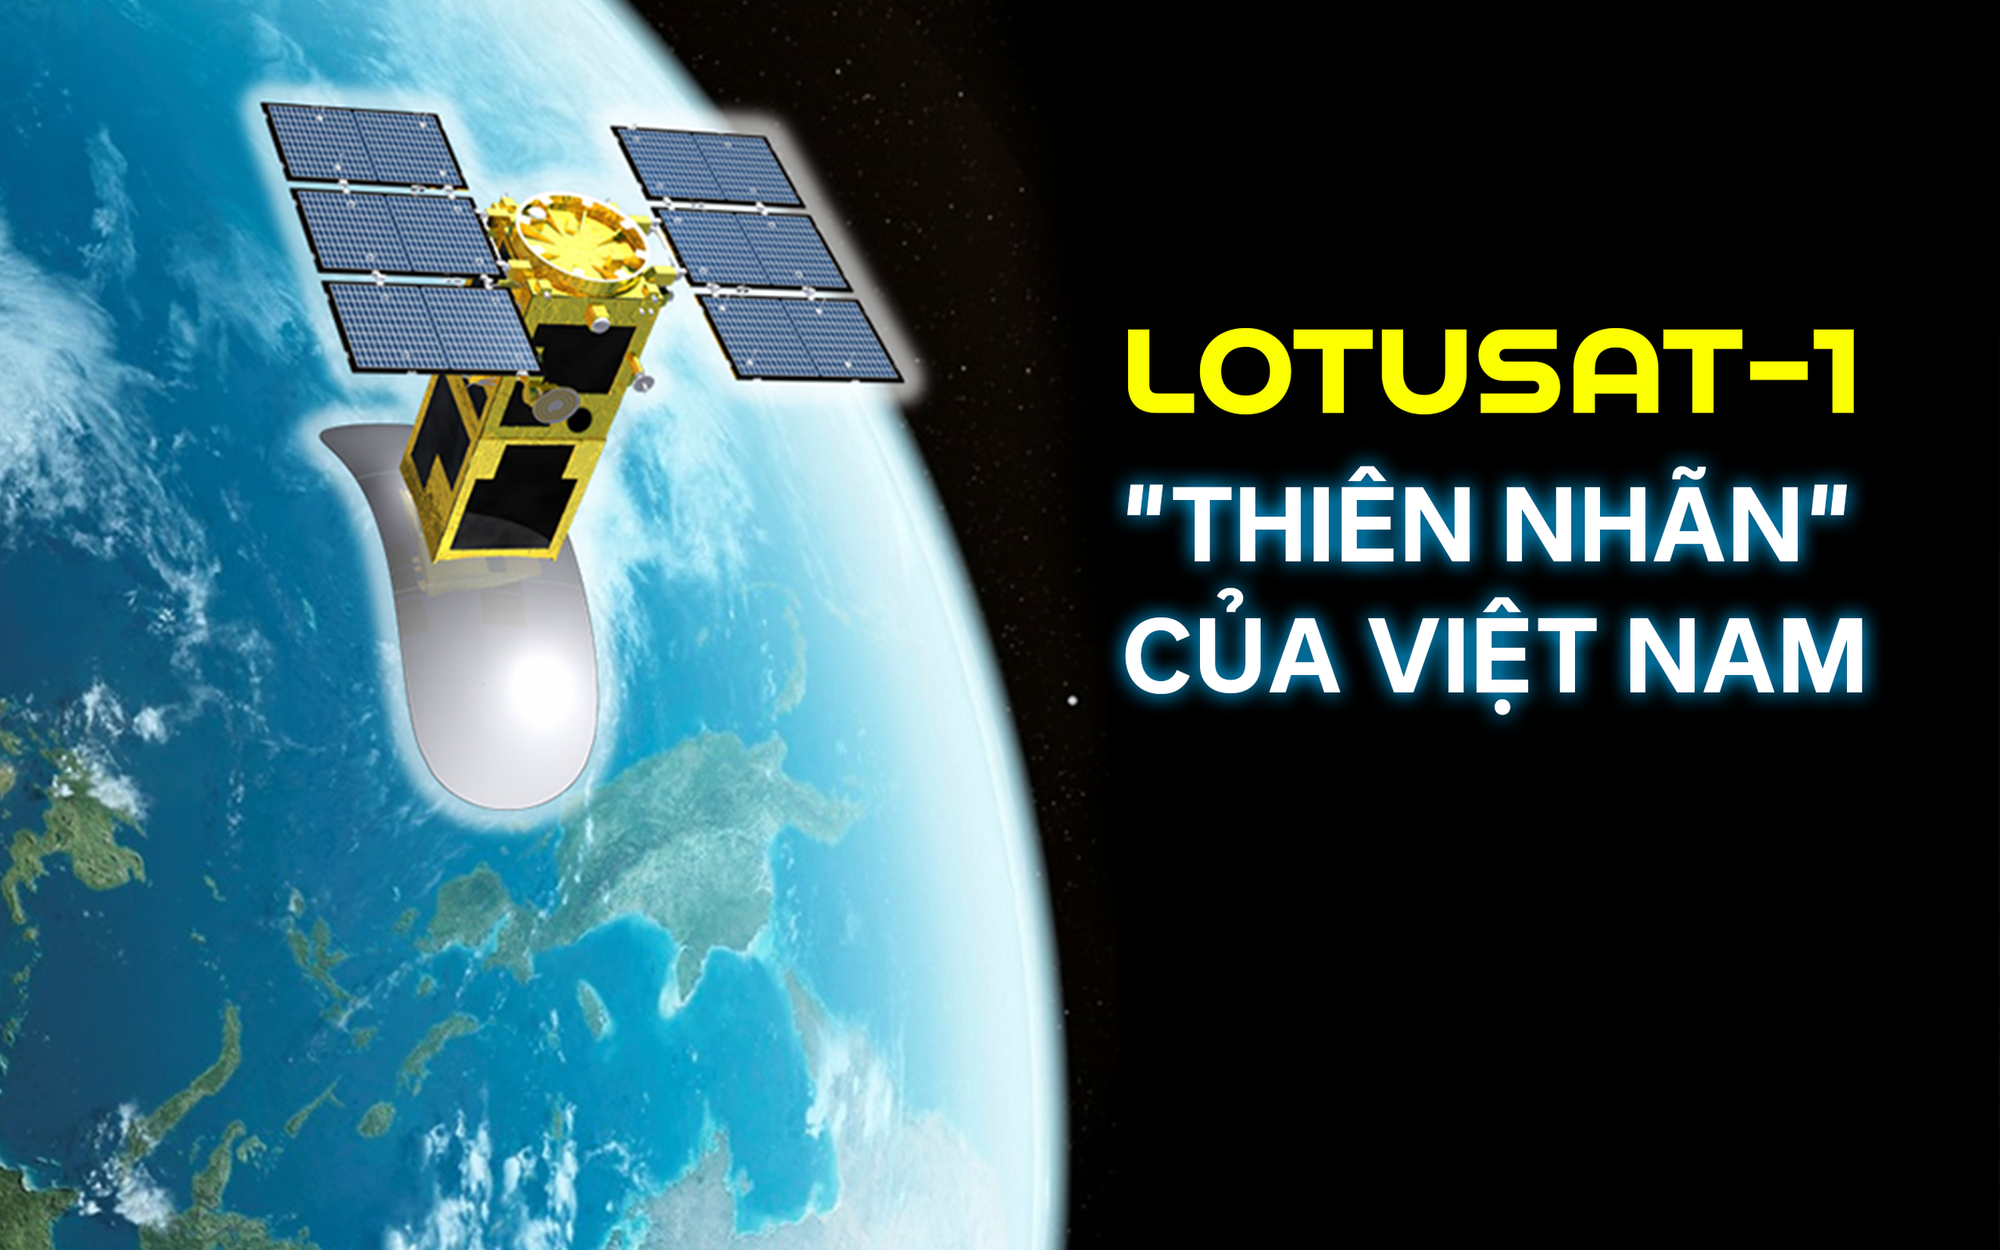 Tự hào Việt Nam: Sắp phóng &quot;thiên nhãn&quot; LOTUSat-1 lên trời, vệ tinh sở hữu sức mạnh quan sát vượt trội